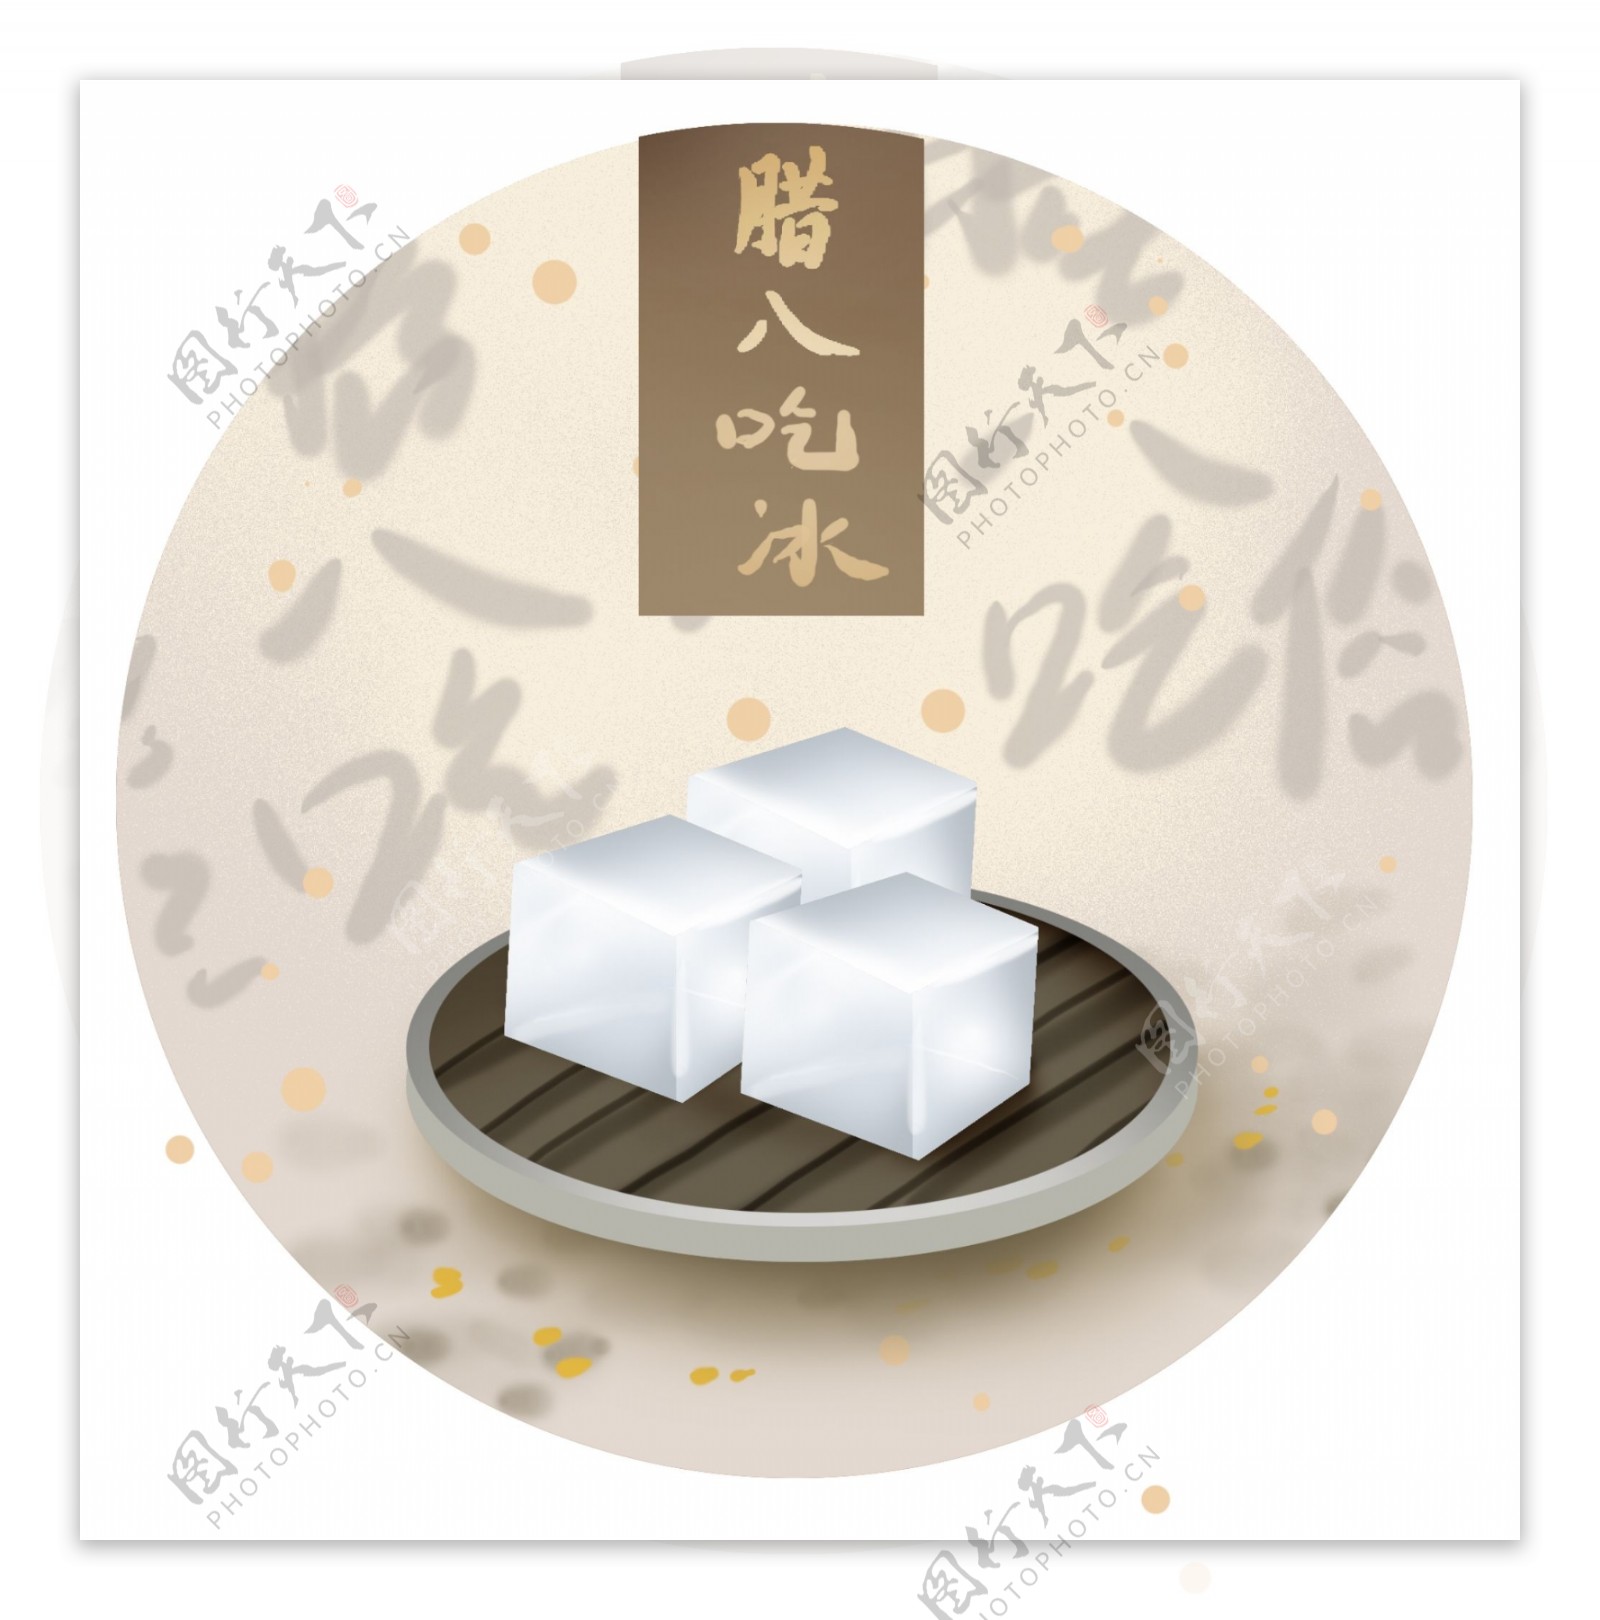 中国腊八节传统习俗吃冰